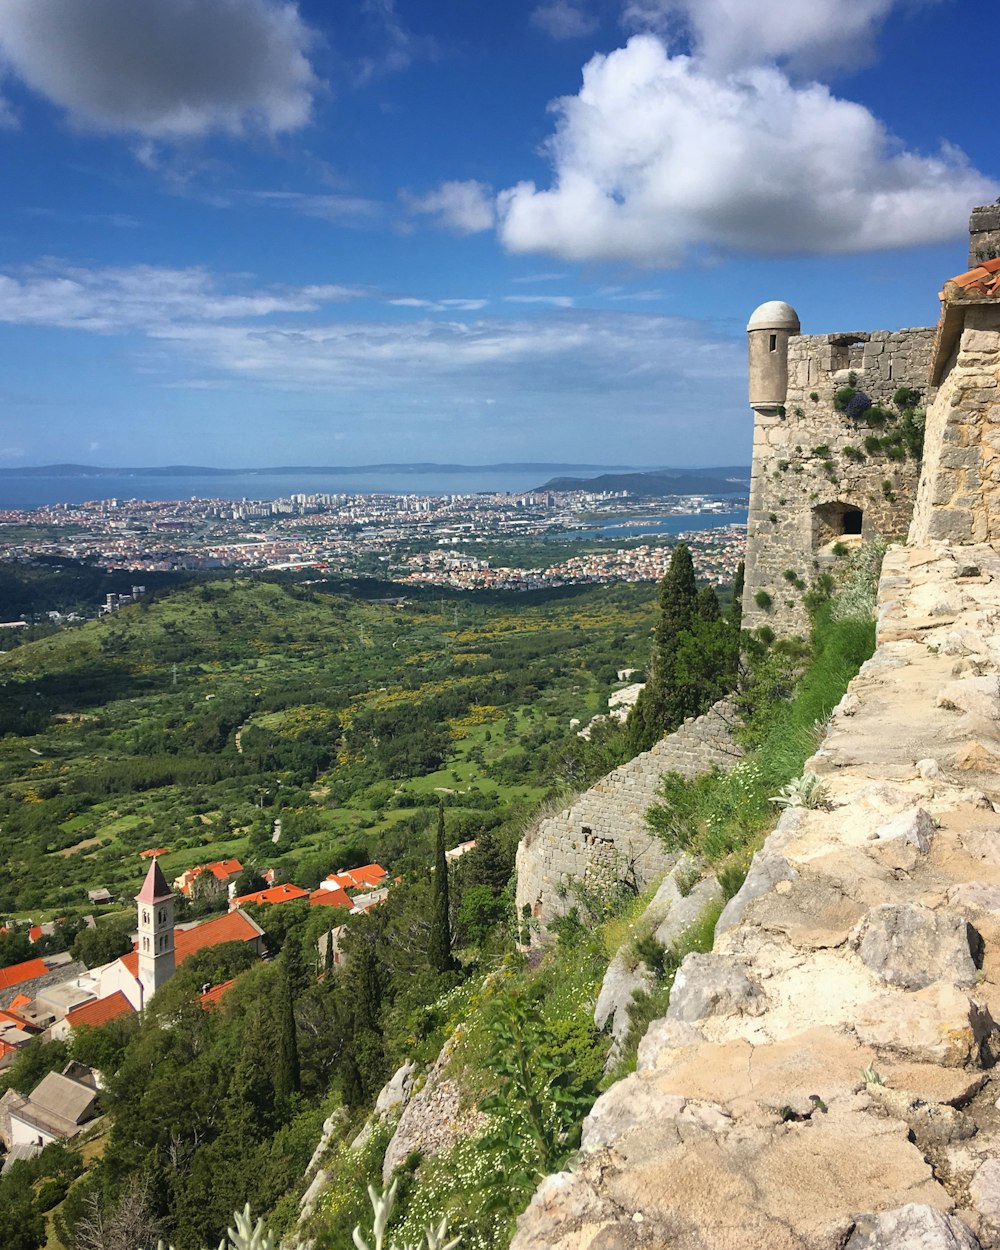 Blick auf eine Stadt von einer Burg auf einem Hügel